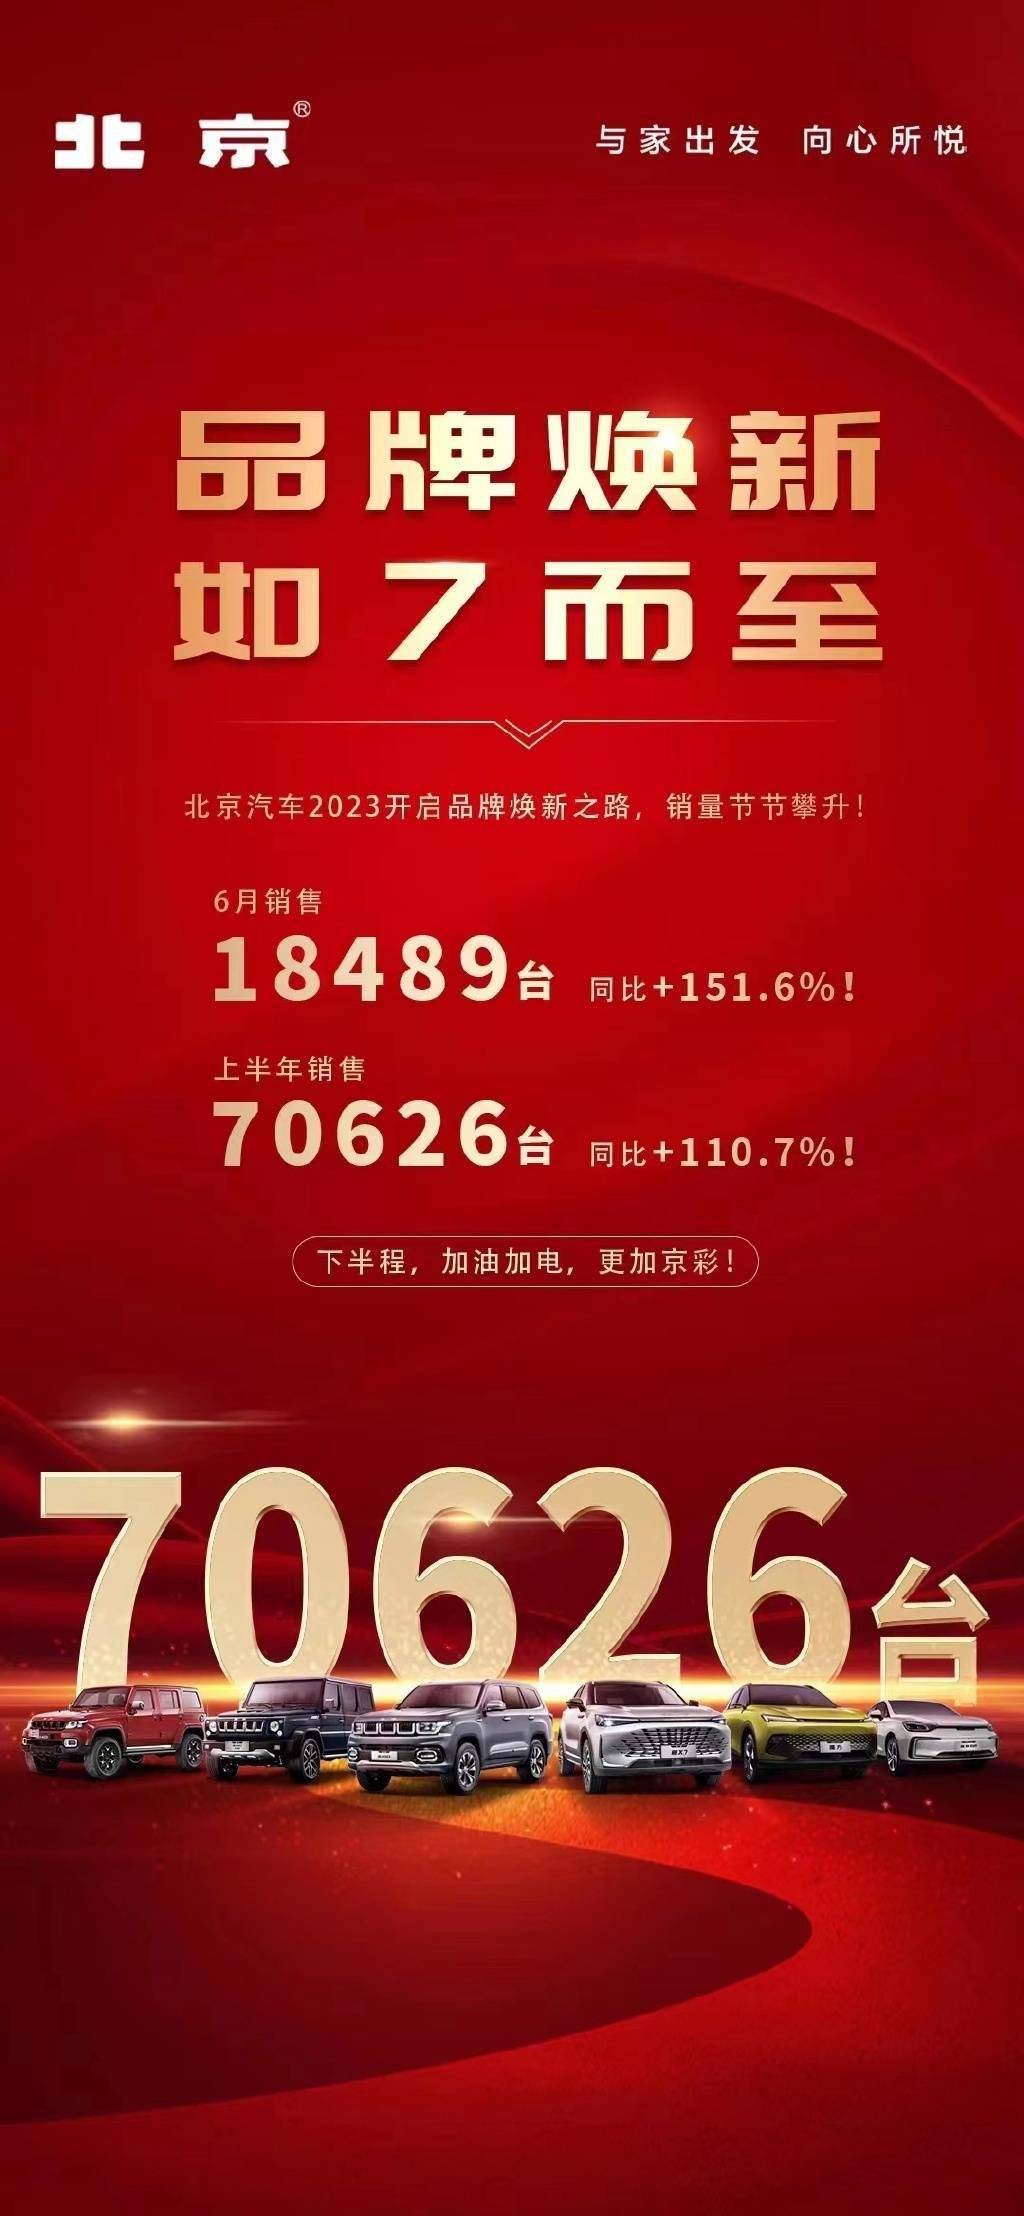 北京汽车6月销售18489台 相比上半年同比增长110.7%